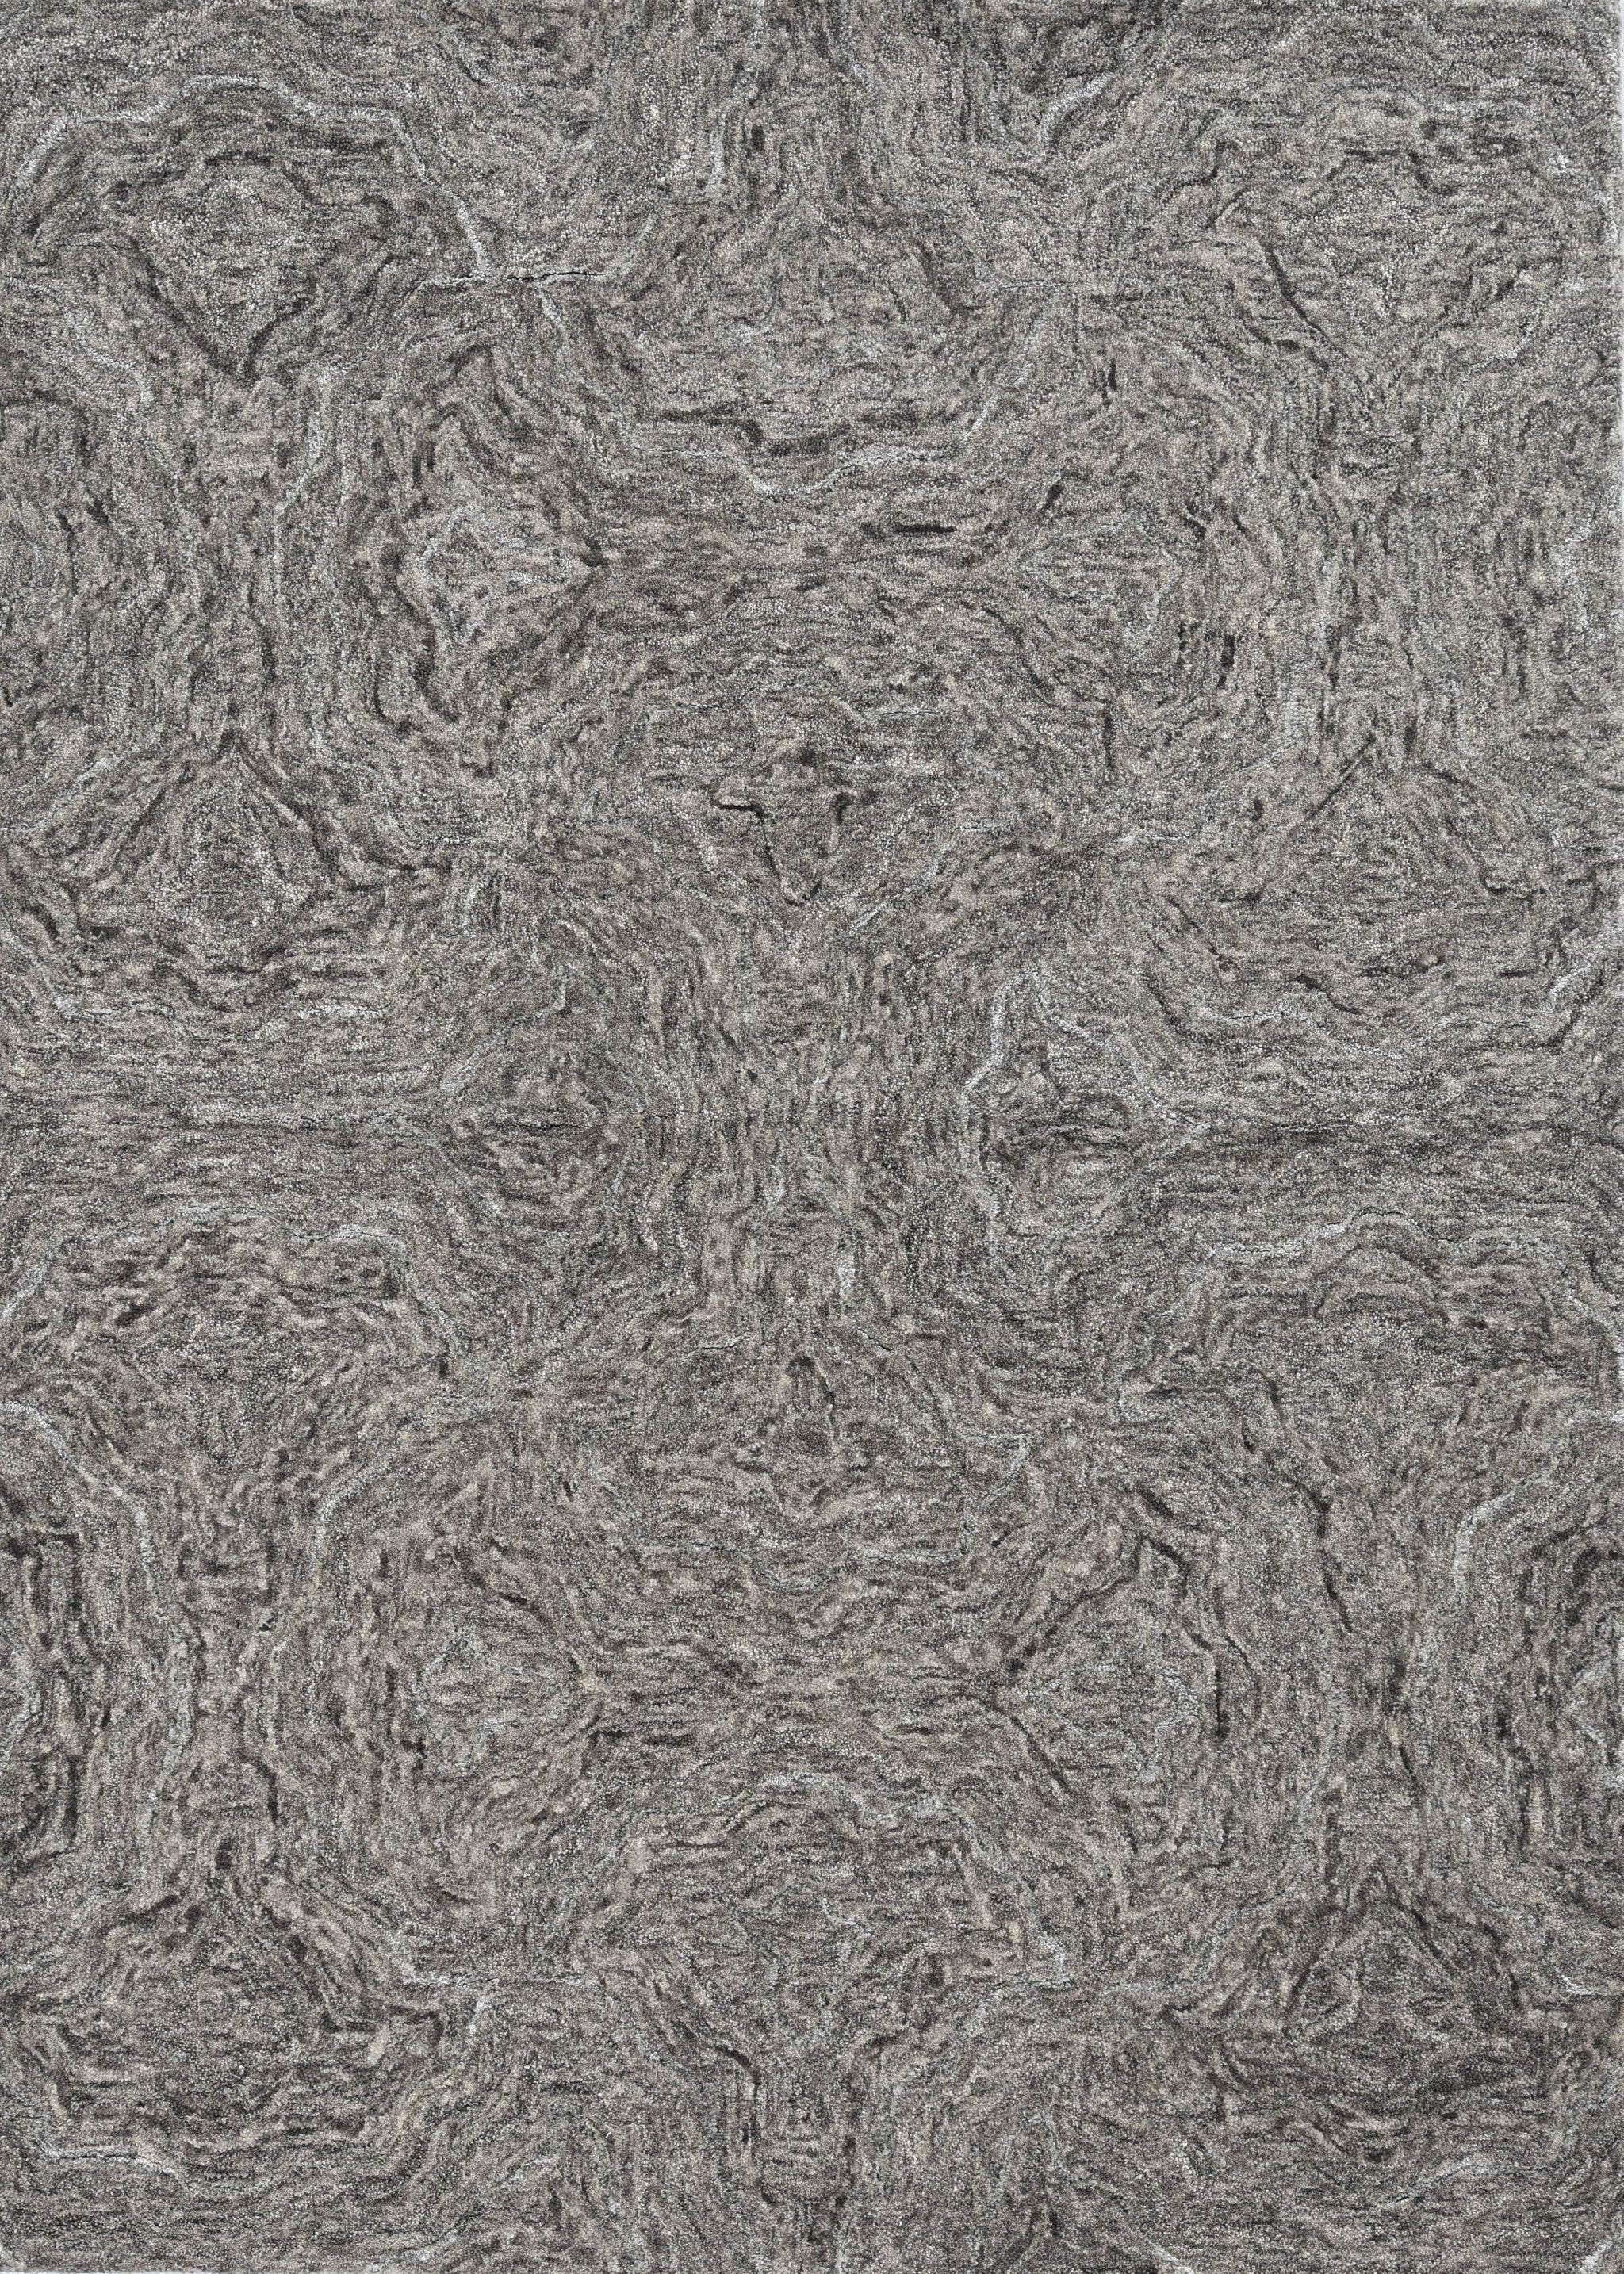 3'X5' Grey Hand Tufted Abstract Indoor Area Rug